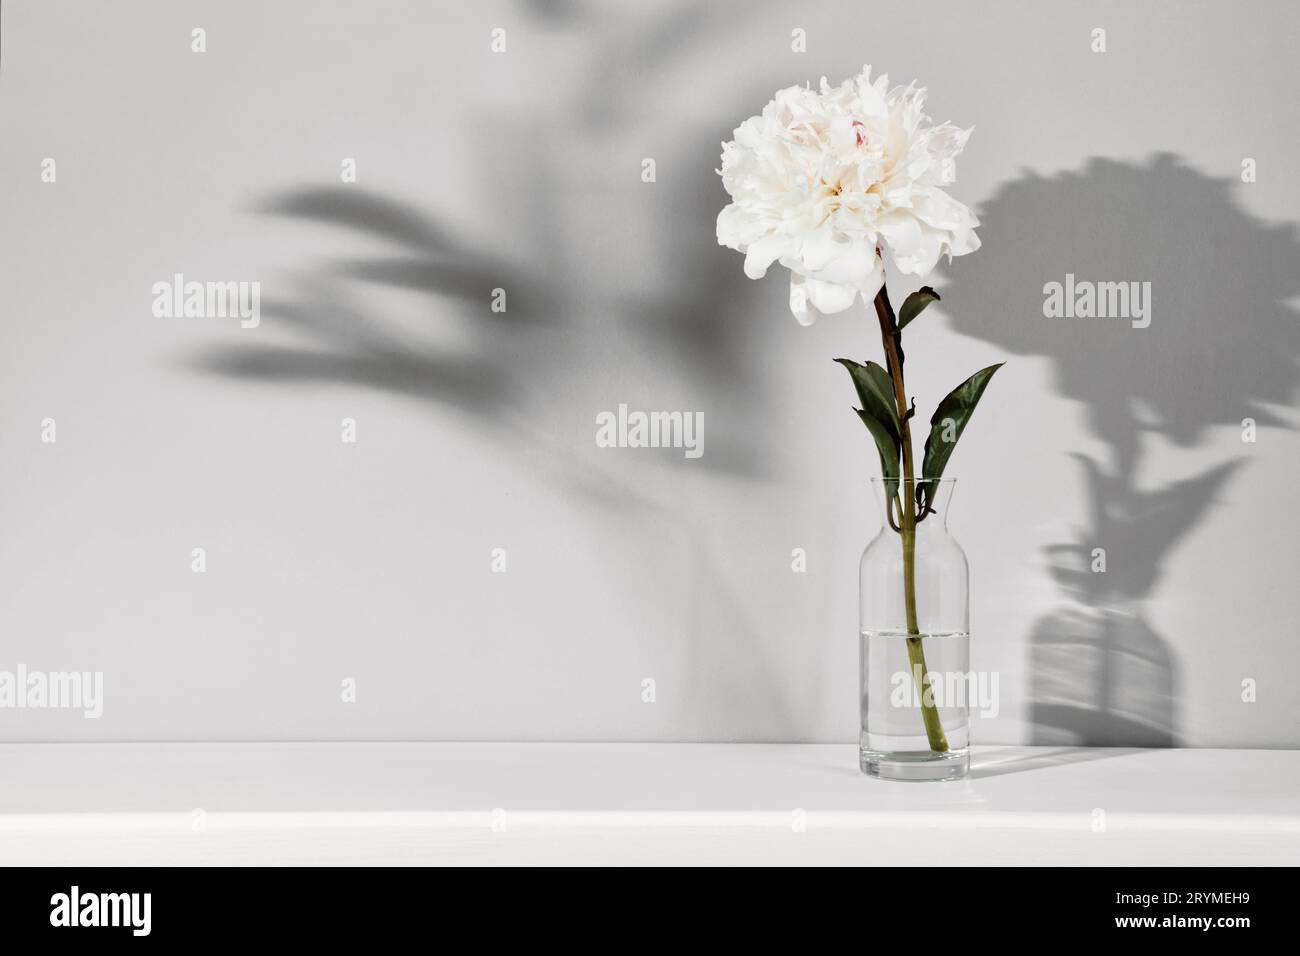 Elegante fiore di peonia bianco sullo sfondo della parete del tavolo. Modello per testo o grafica, ombre alla moda Foto Stock